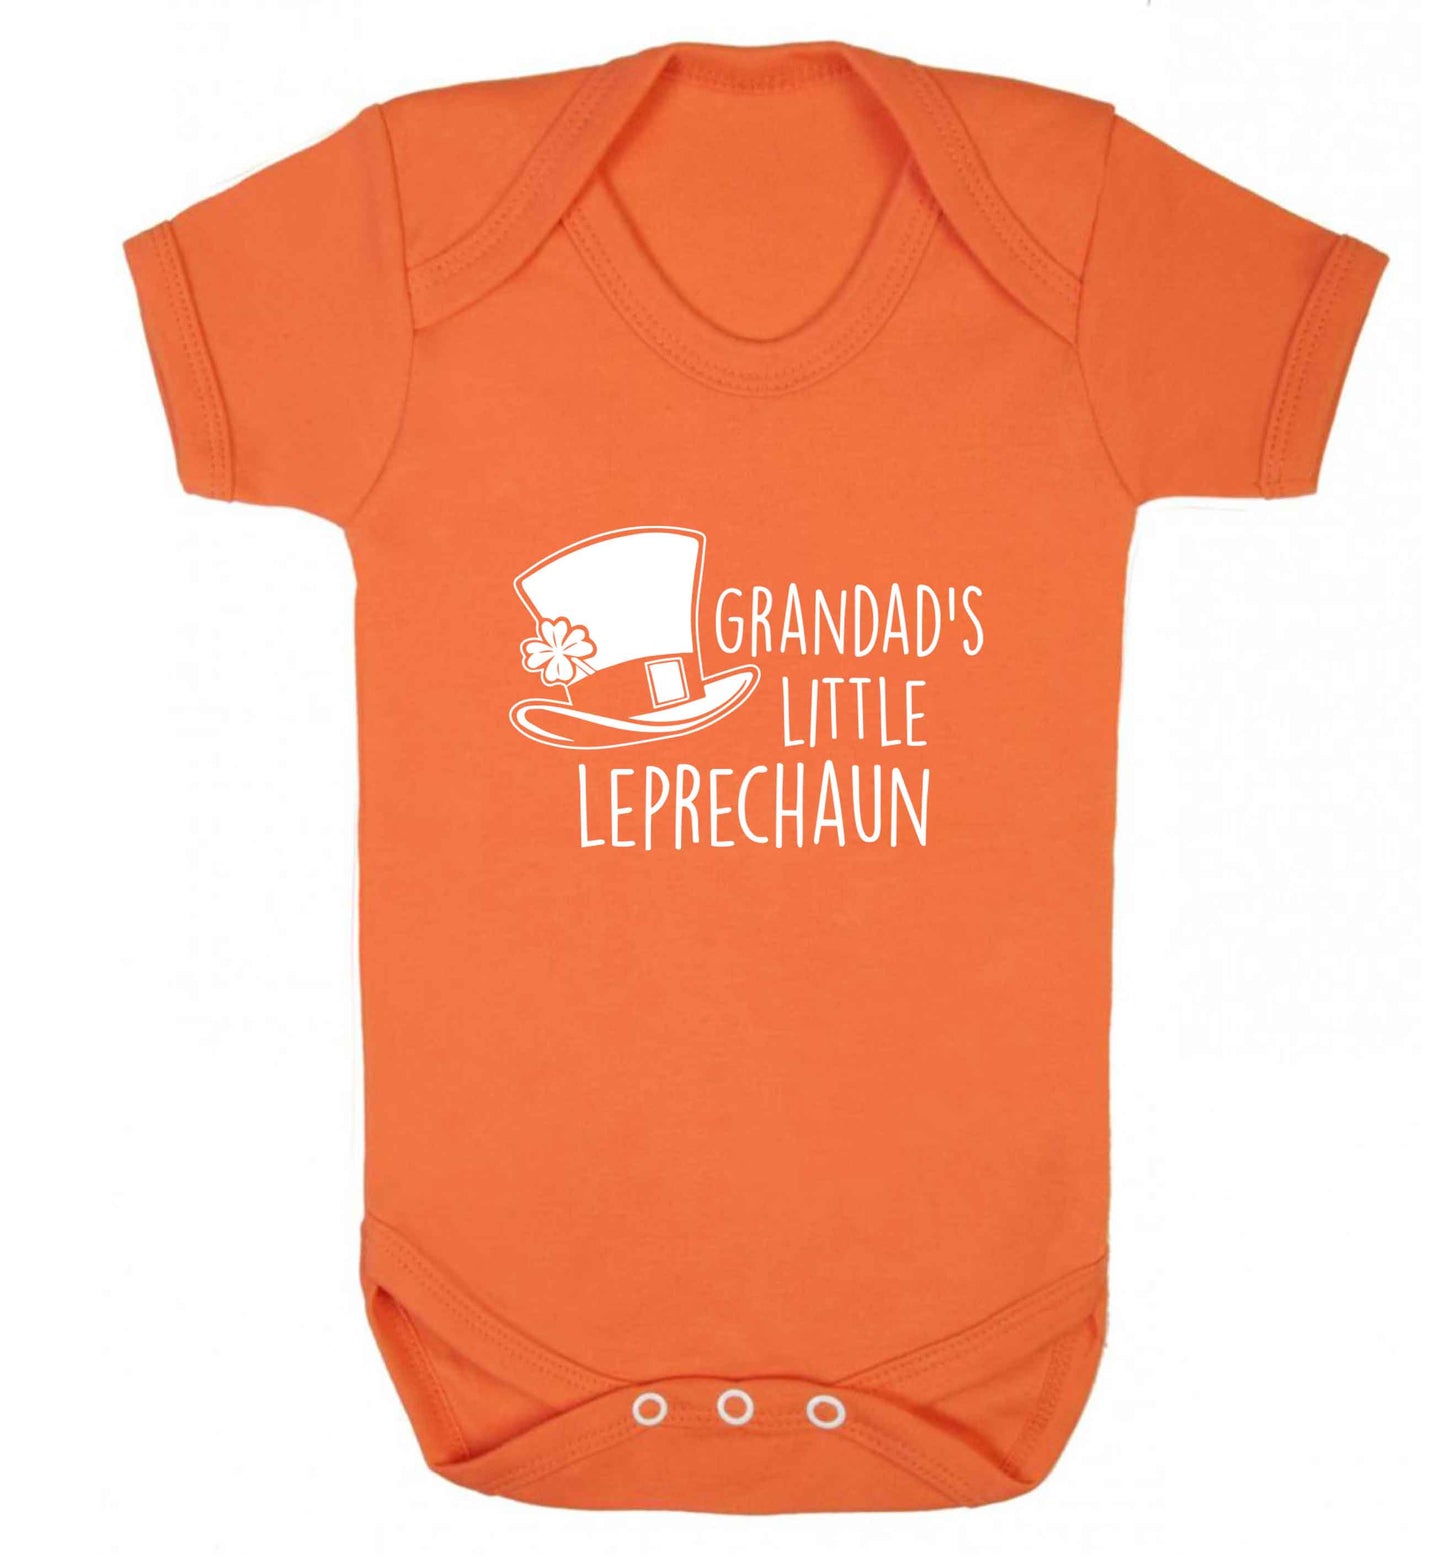 Grandad's little leprechaun baby vest orange 18-24 months